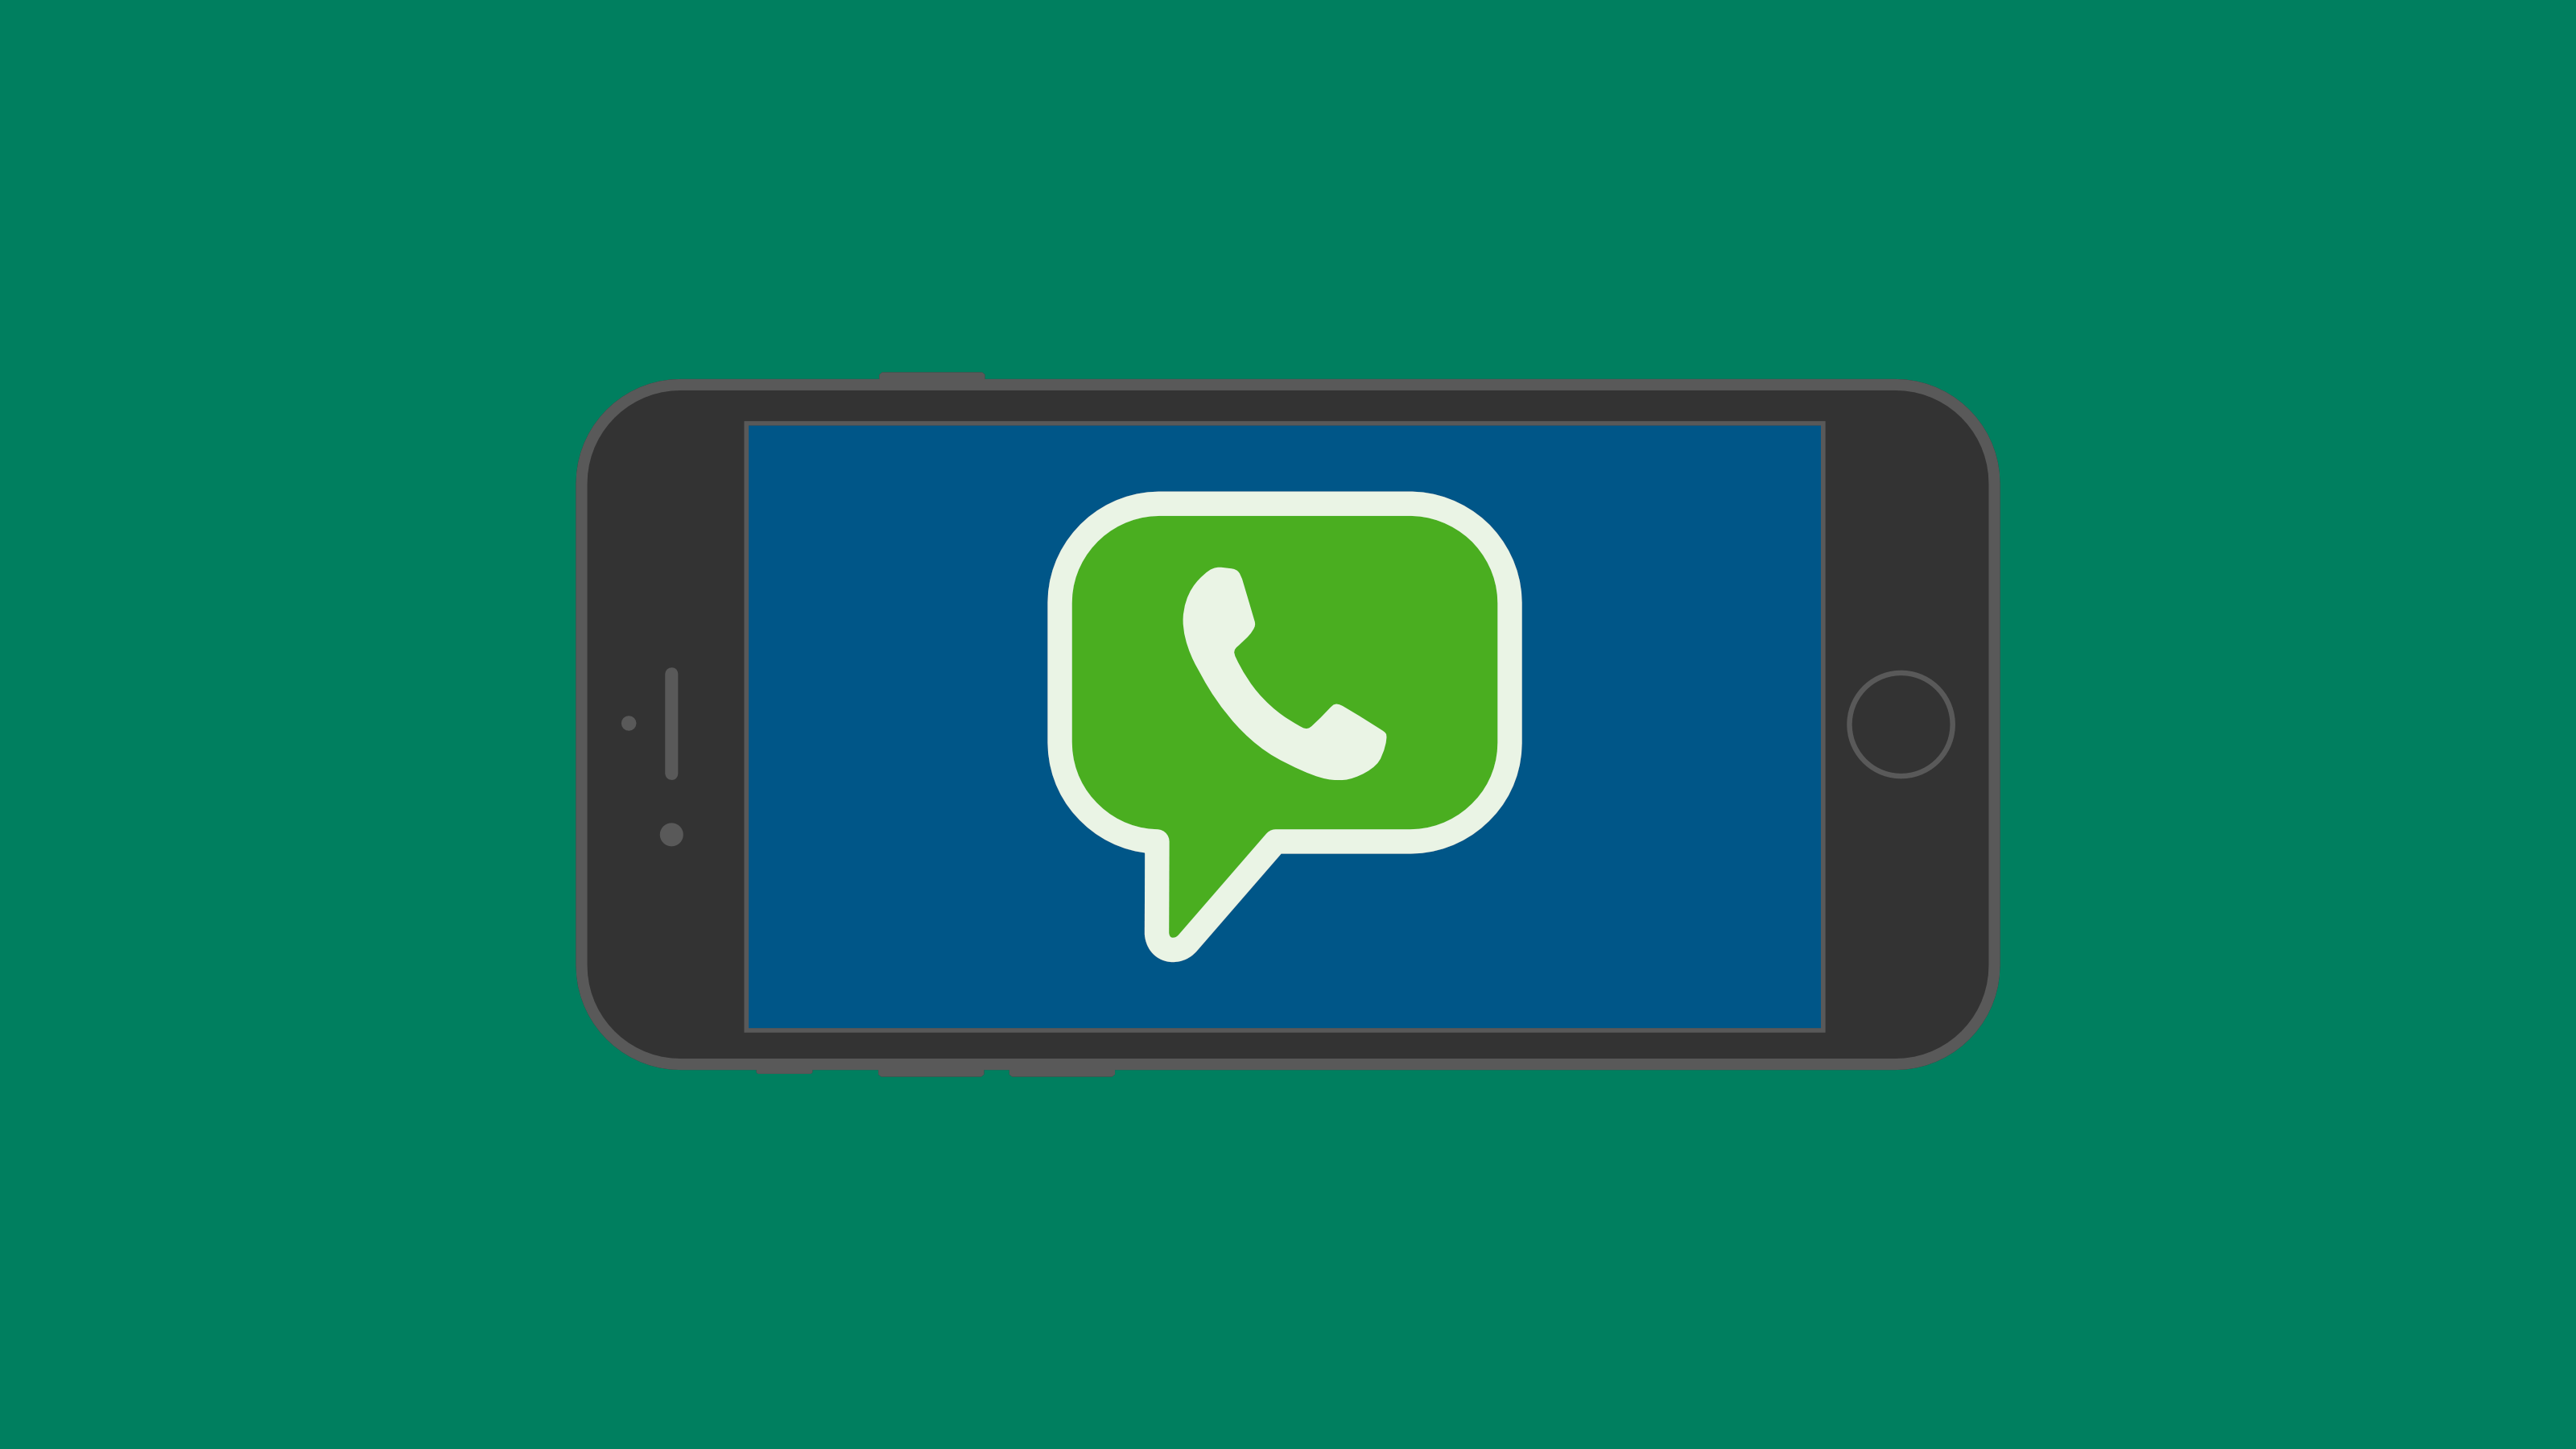 Green Messaging Logo - Messaging Apps & Brands: WhatsApp Messenger